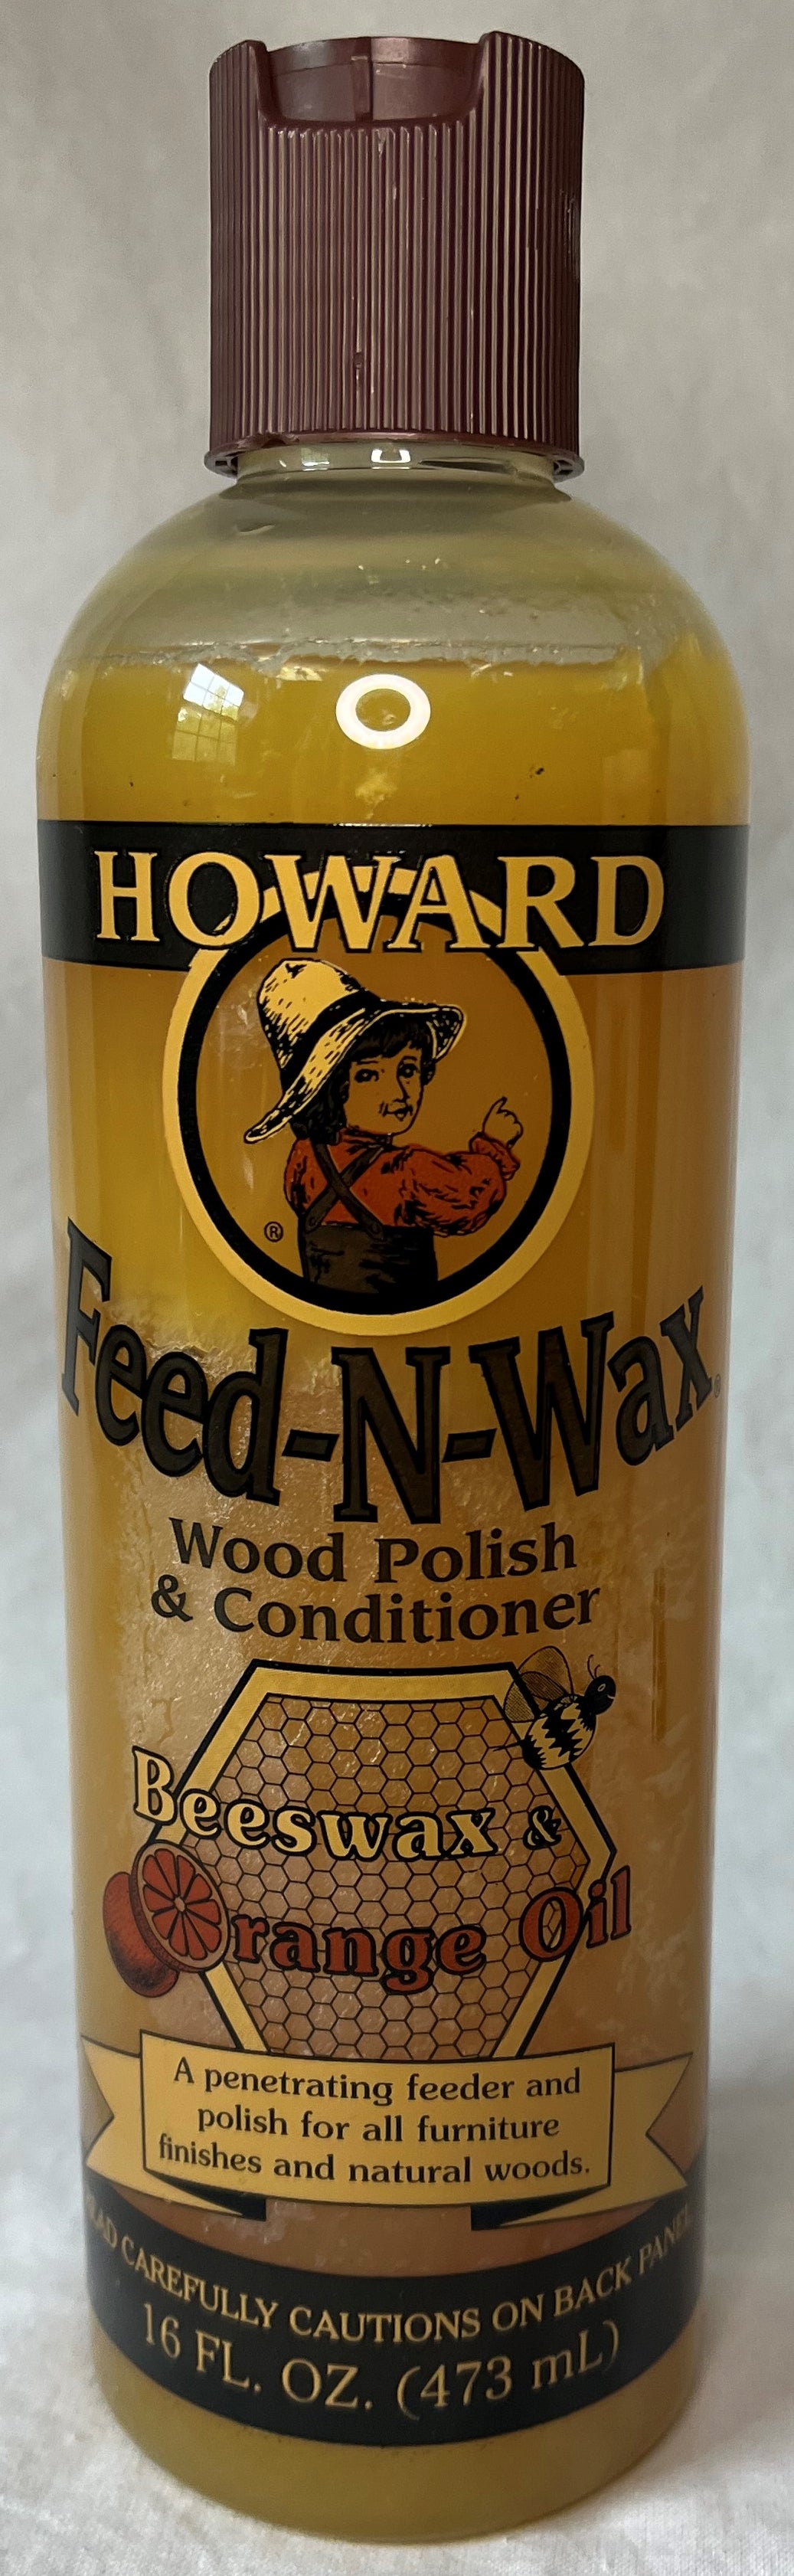 Howard 16 oz. Feed-N-Wax Wood Polish